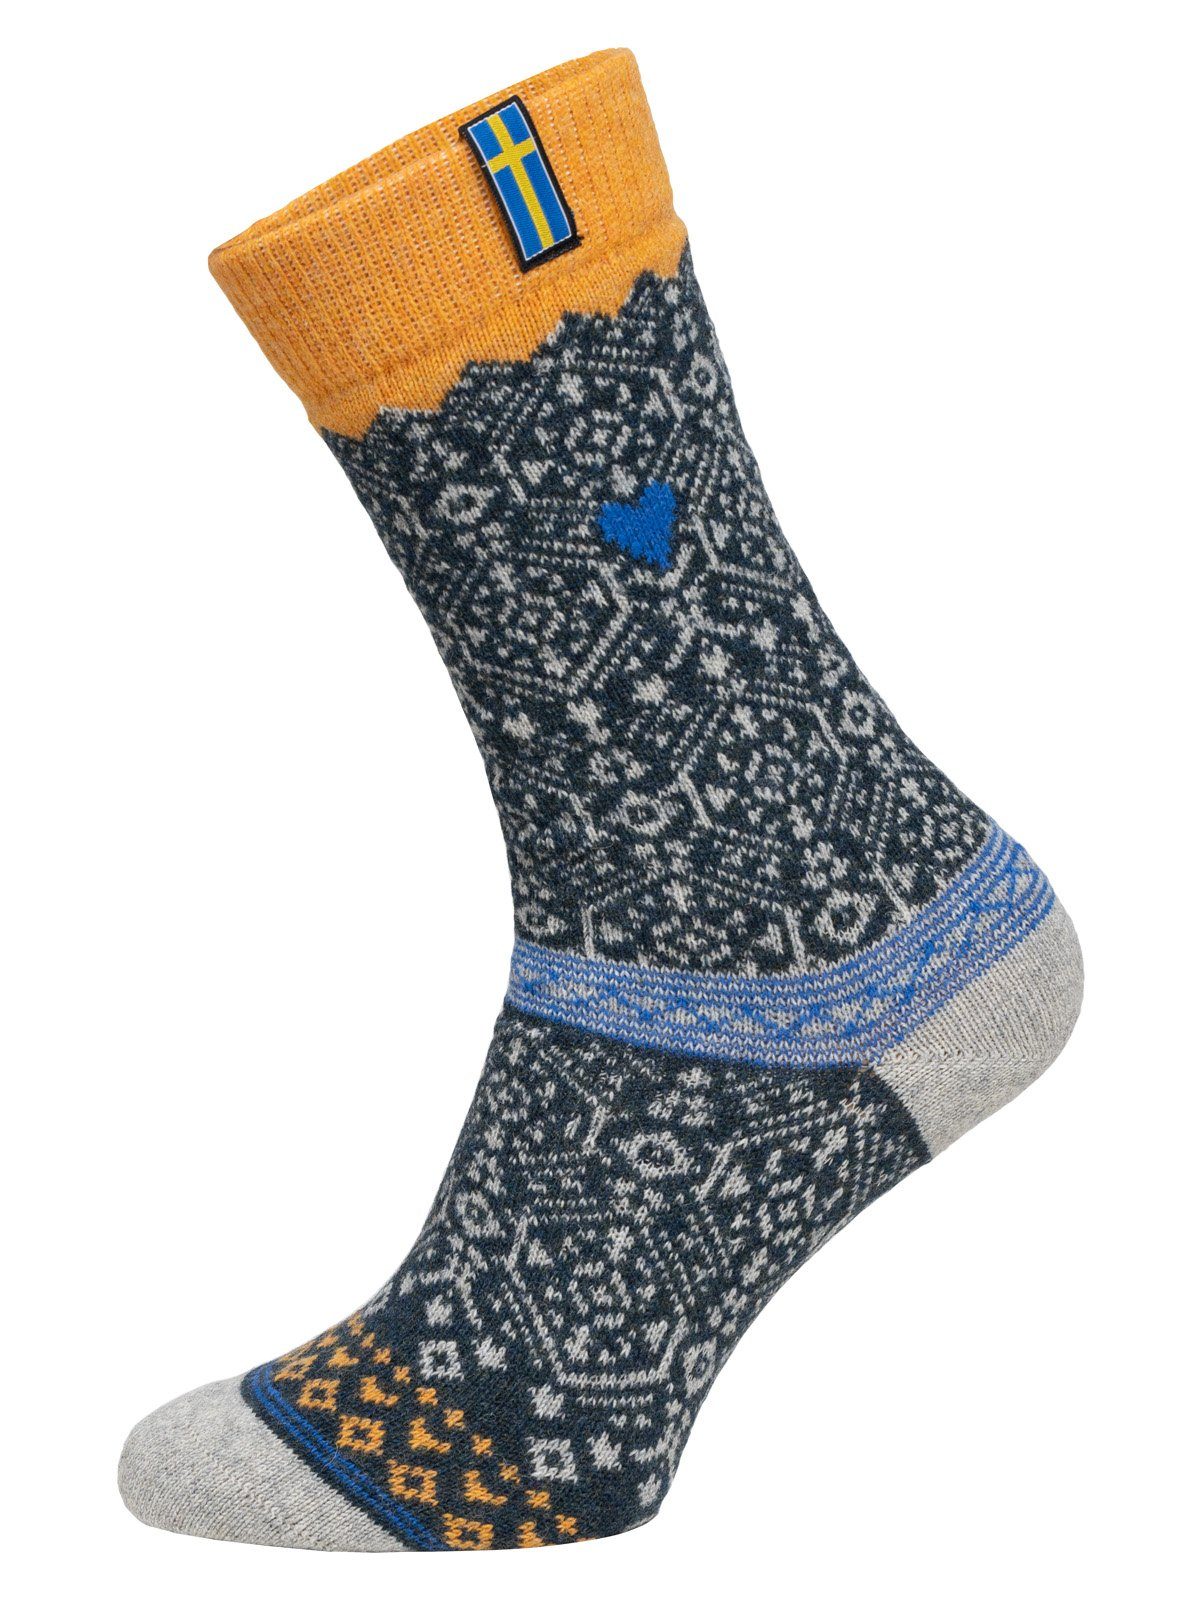 Nordic mit "Schweden" Wollanteil dünne 70% Design Wolle Socken Skandinavische Aus Schweden Socken HomeOfSocks und Wollsocke strapazierfähige Kuschelsocken